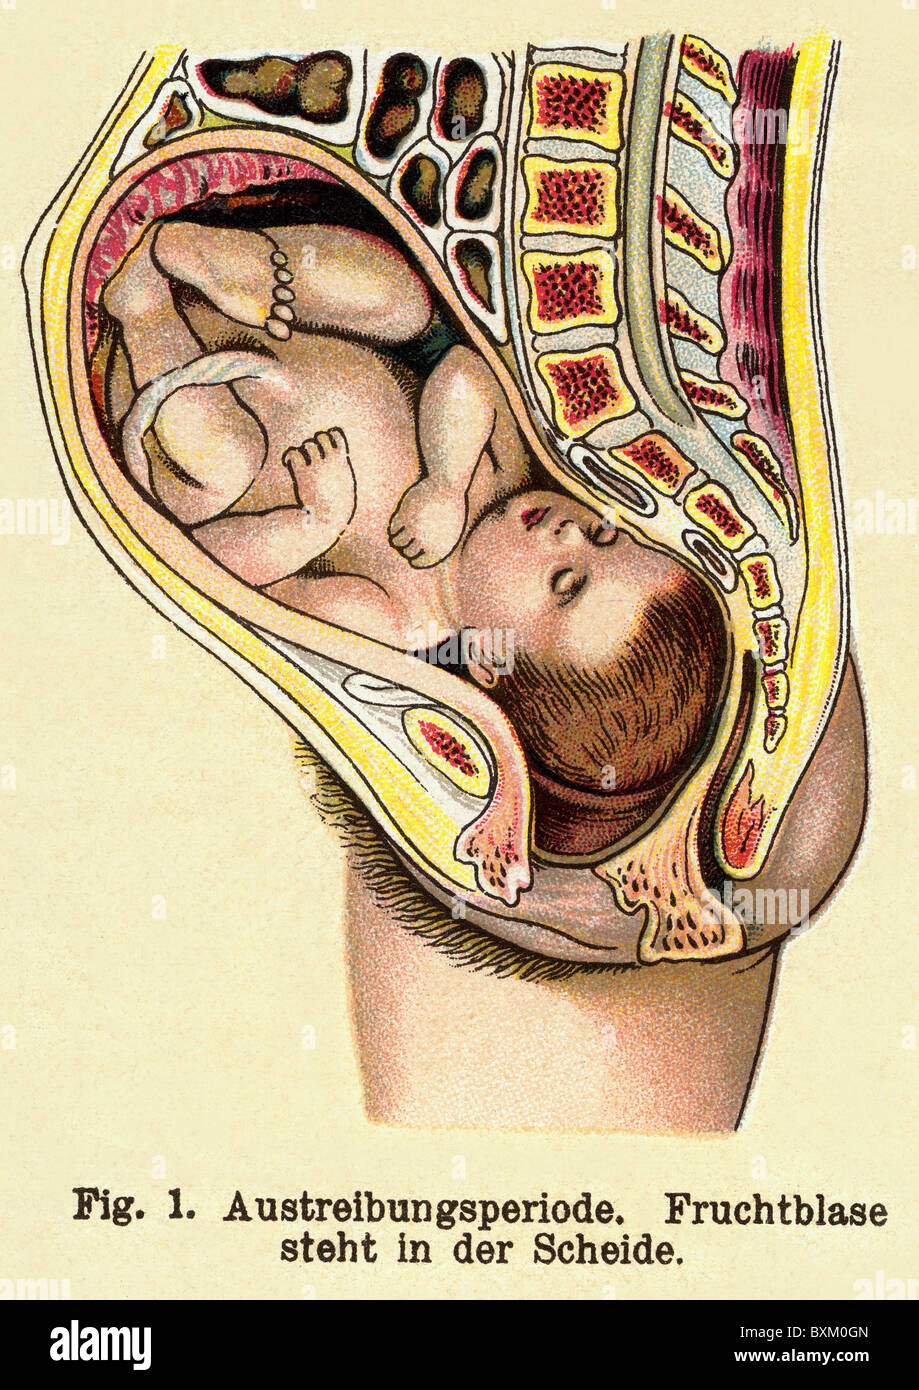 Médecine, gynécologie, naissance, phase peu avant l'accouchement, lithographie, Allemagne, vers 1905, droits additionnels-Clearences-non disponible Banque D'Images